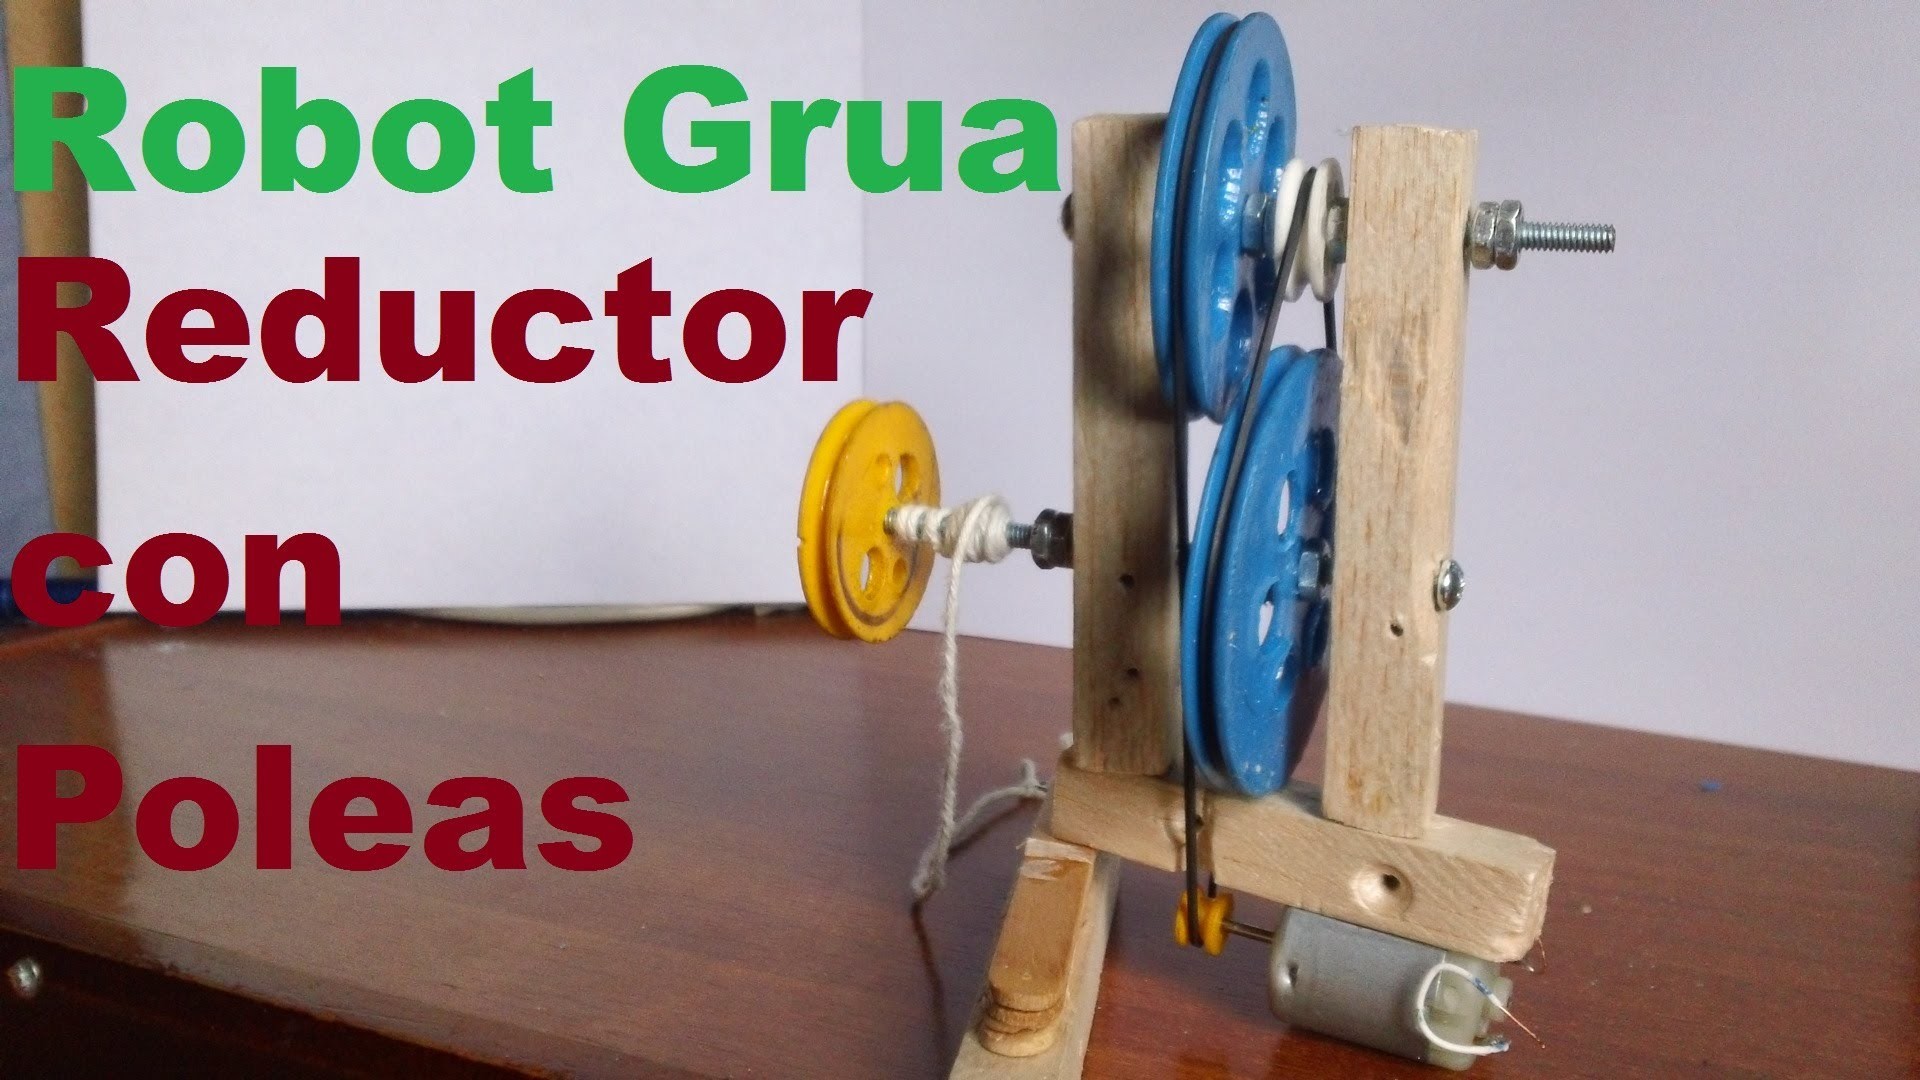 Robot Grúa (Como hacer un Motoreductor con poleas)